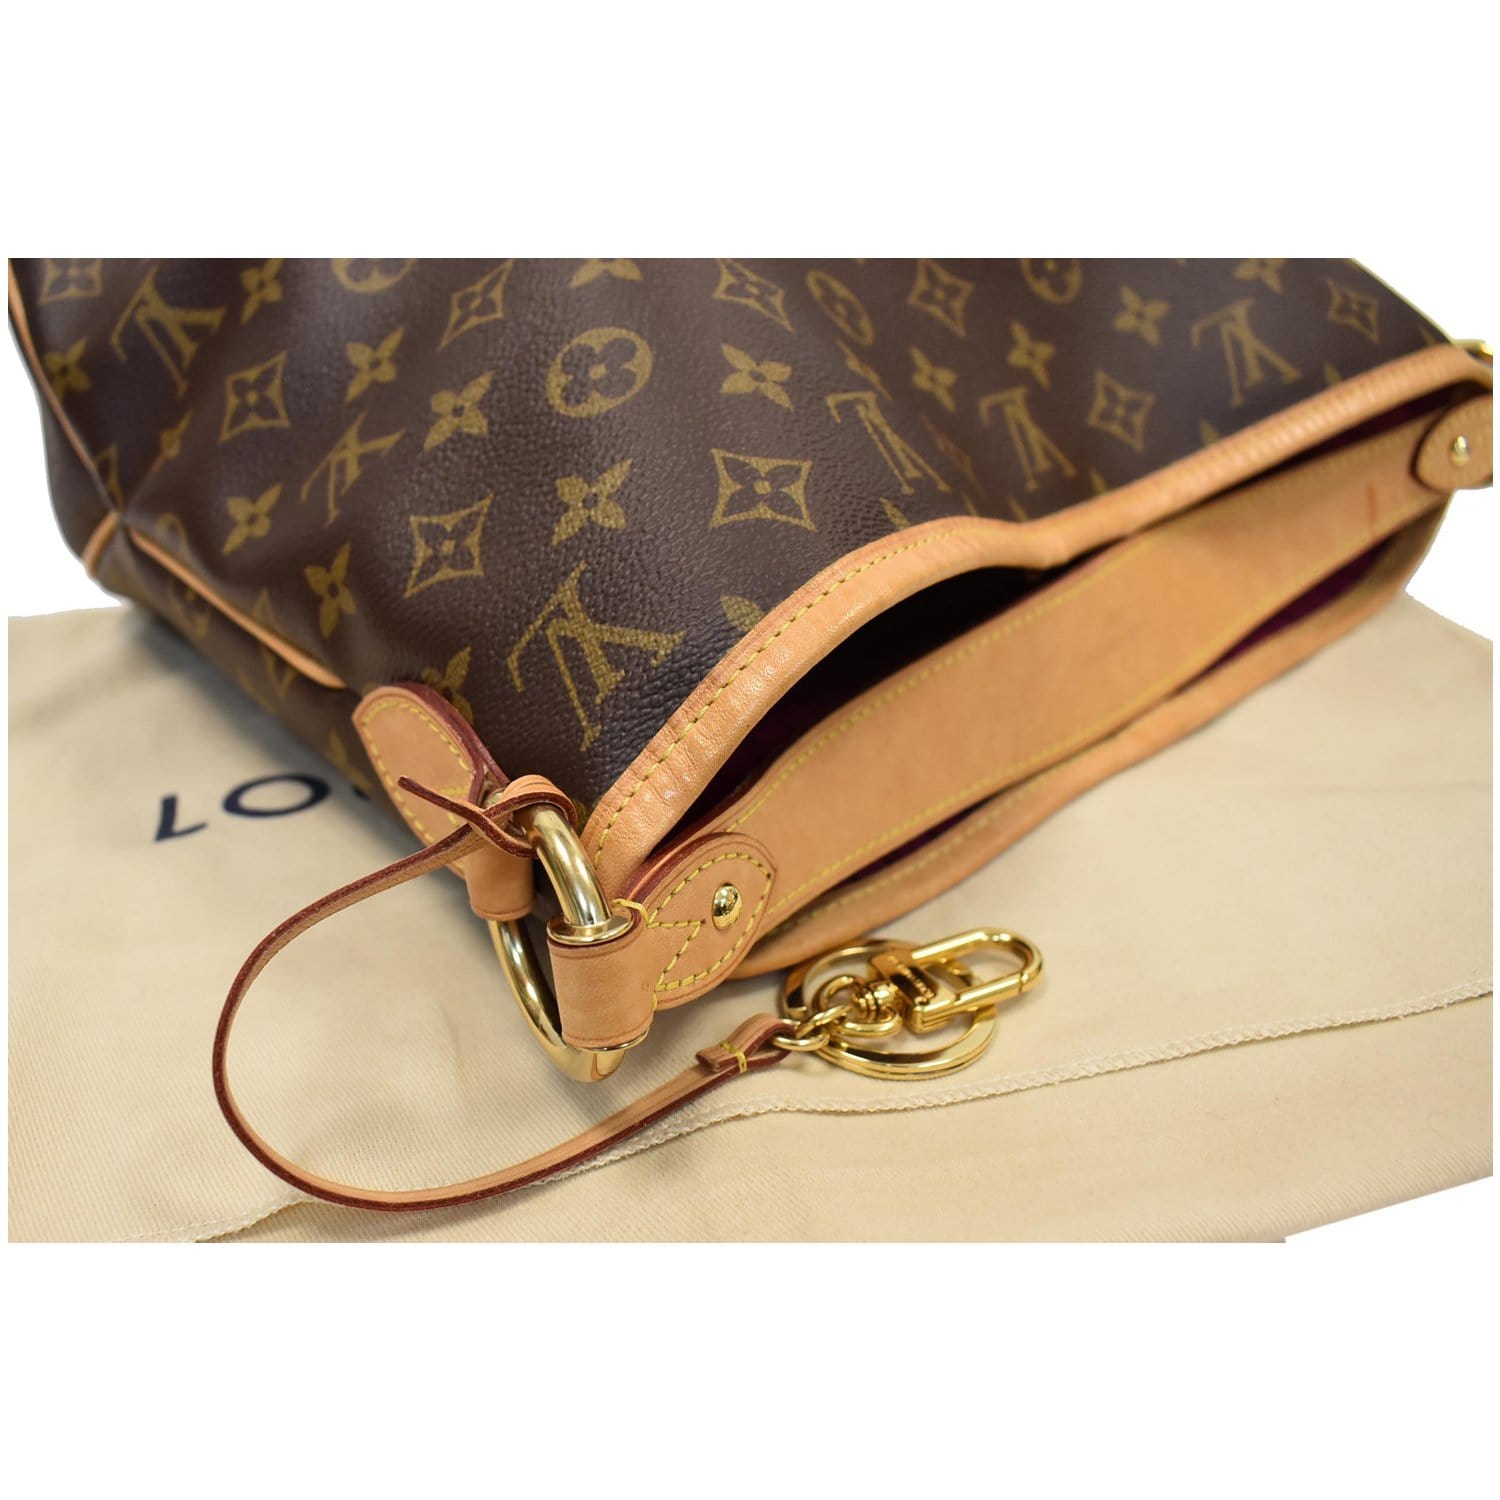 Authentic Louis Vuitton Damier Ebene Delightful PM Bag Handbag